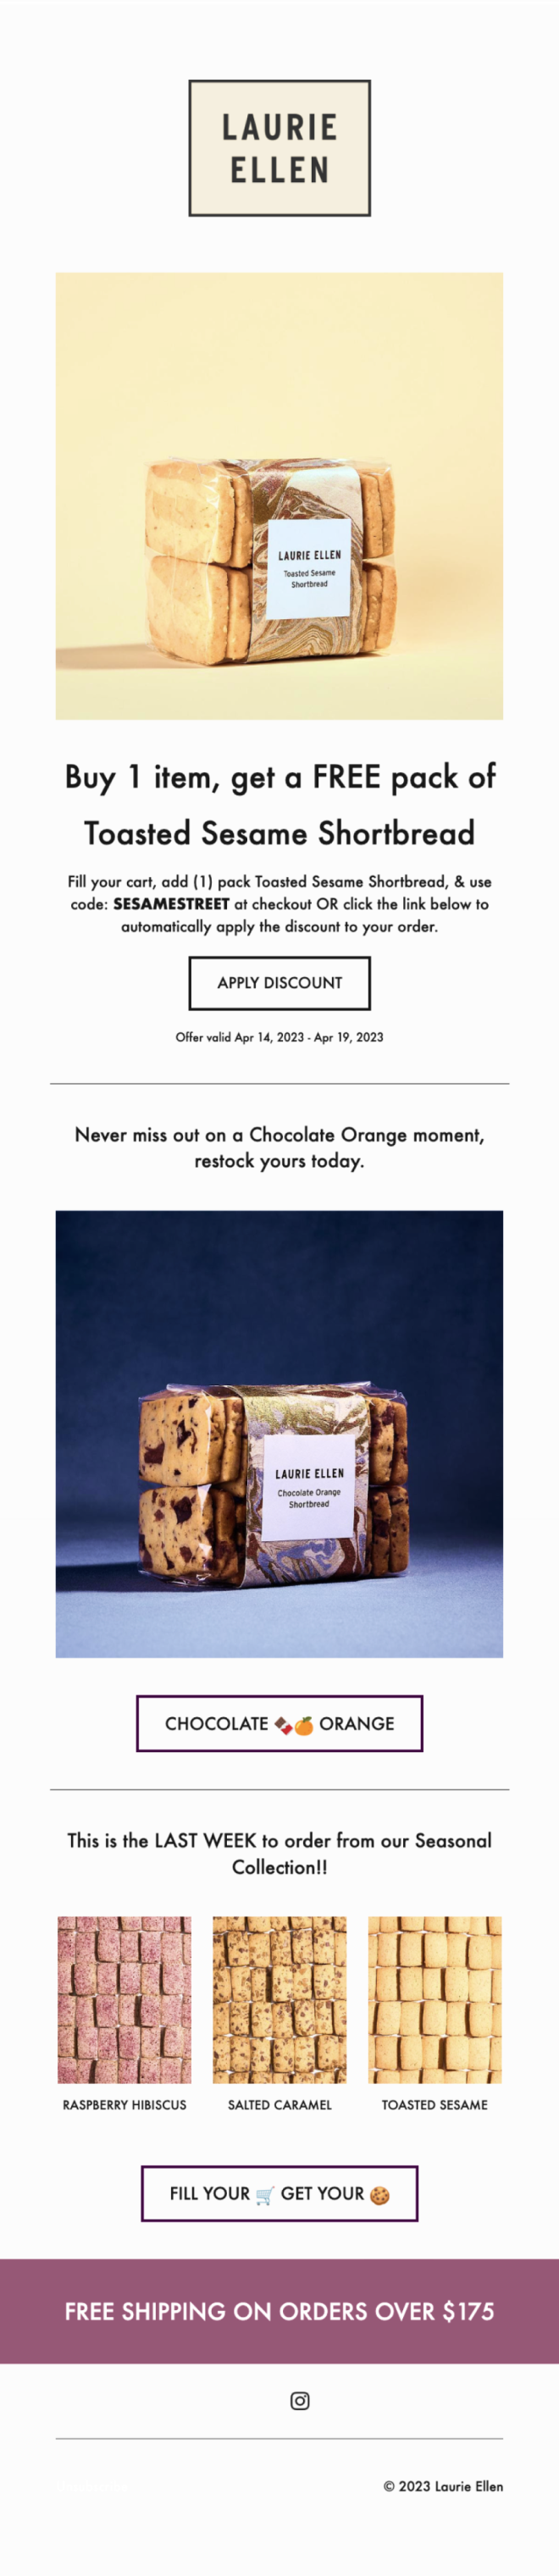 E-mail présentant une promotion Deux pour le prix d’un sur les paquets de gâteaux au sésame de la boutique en ligne de Laurie Ellen.